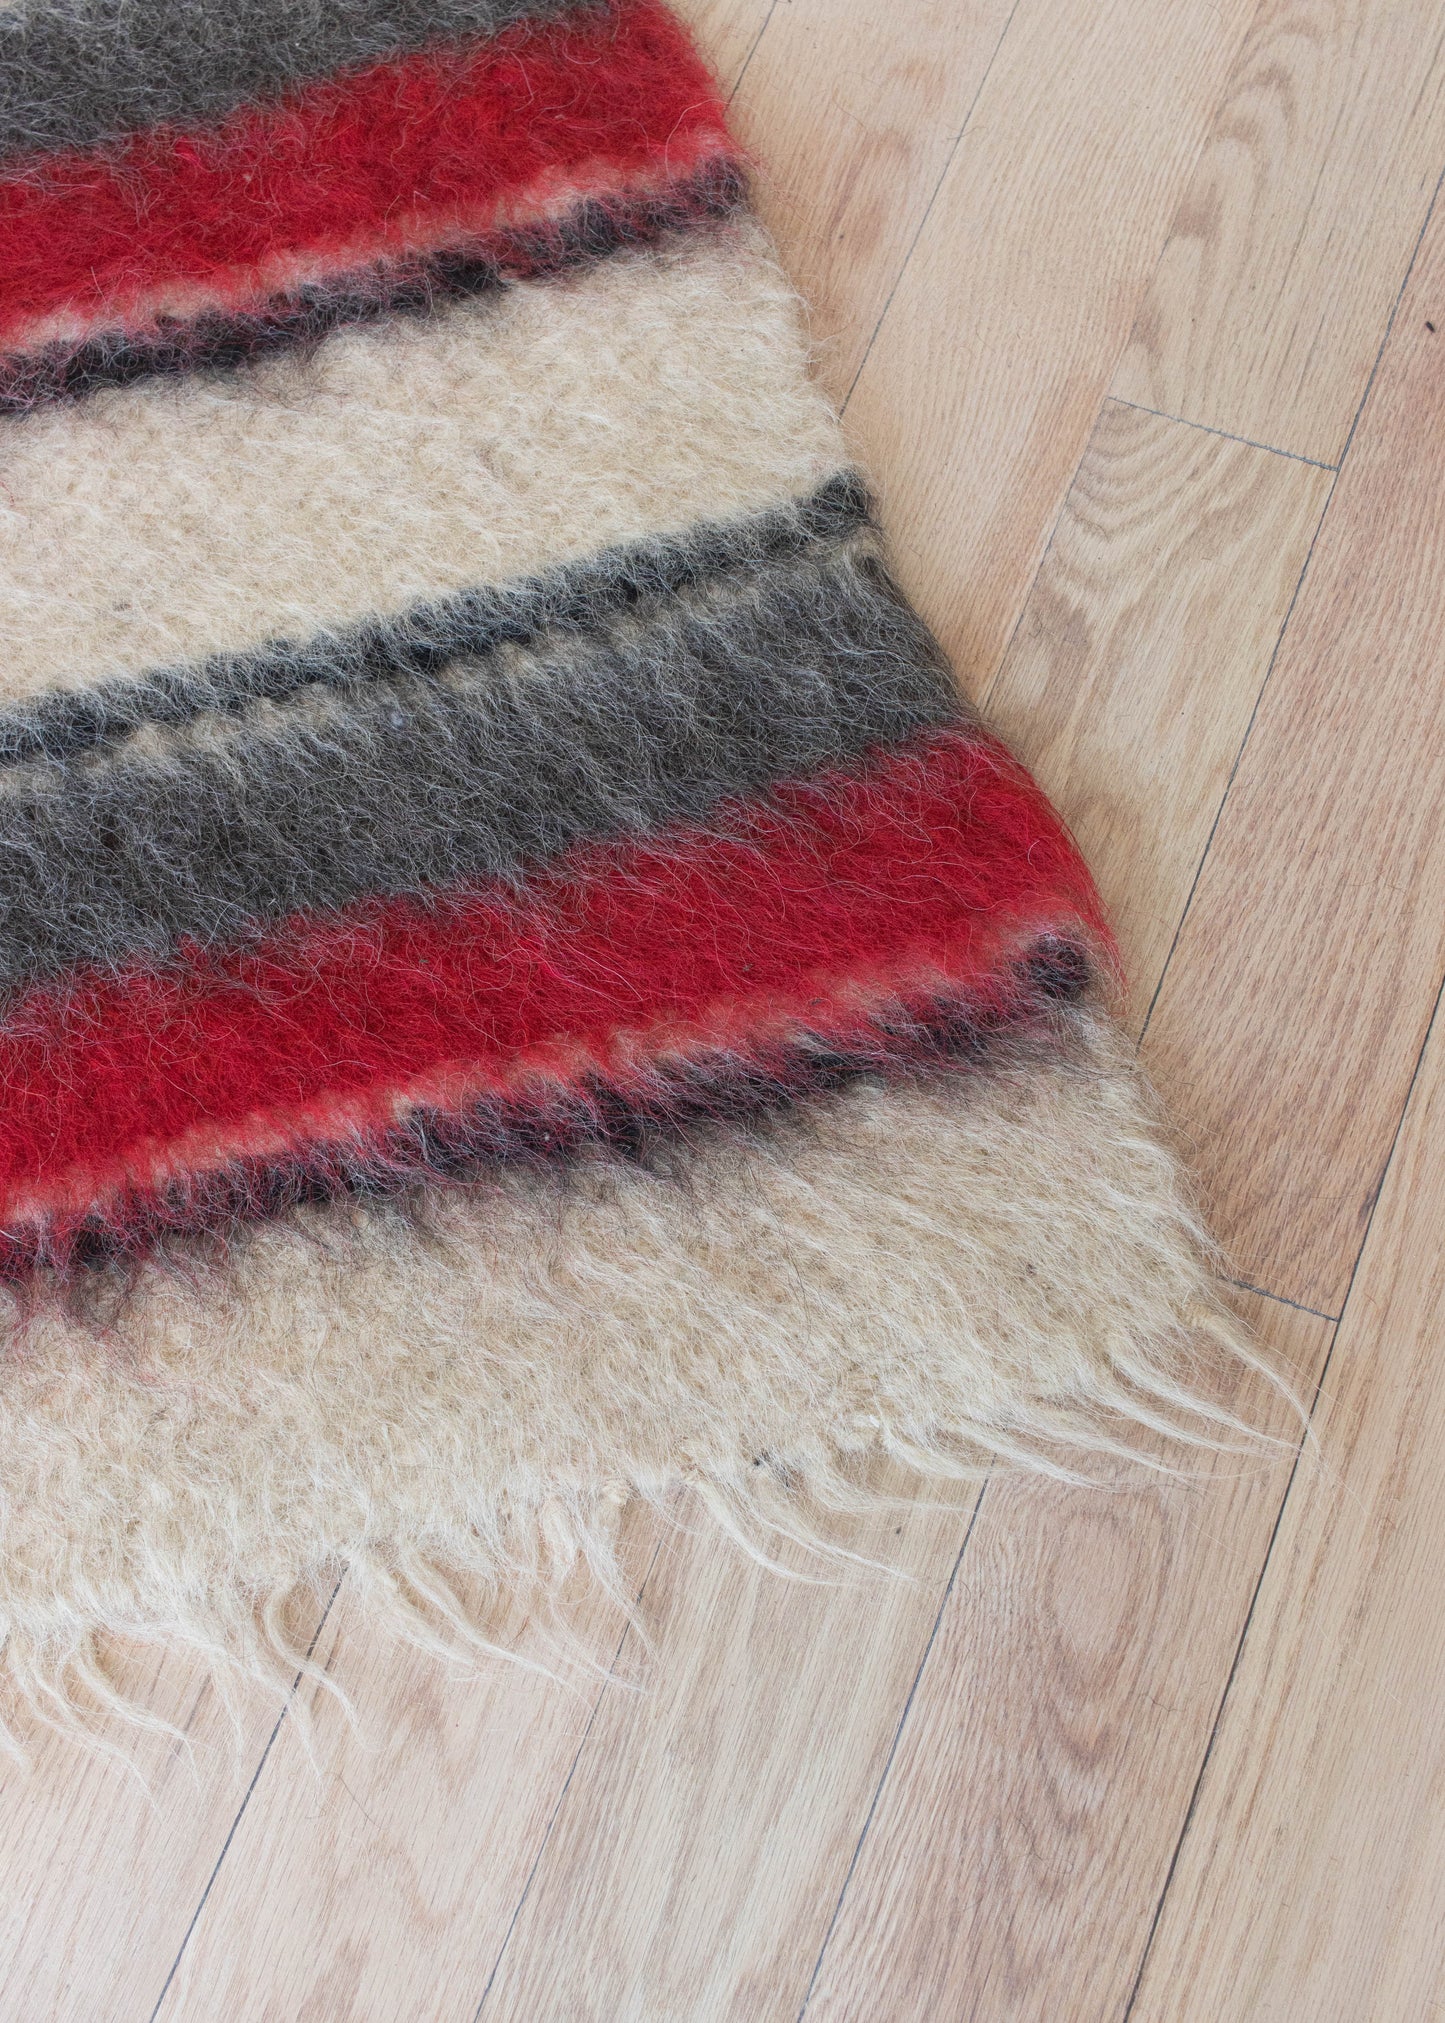 Vintage Stripe Pattern Wool Area Rug